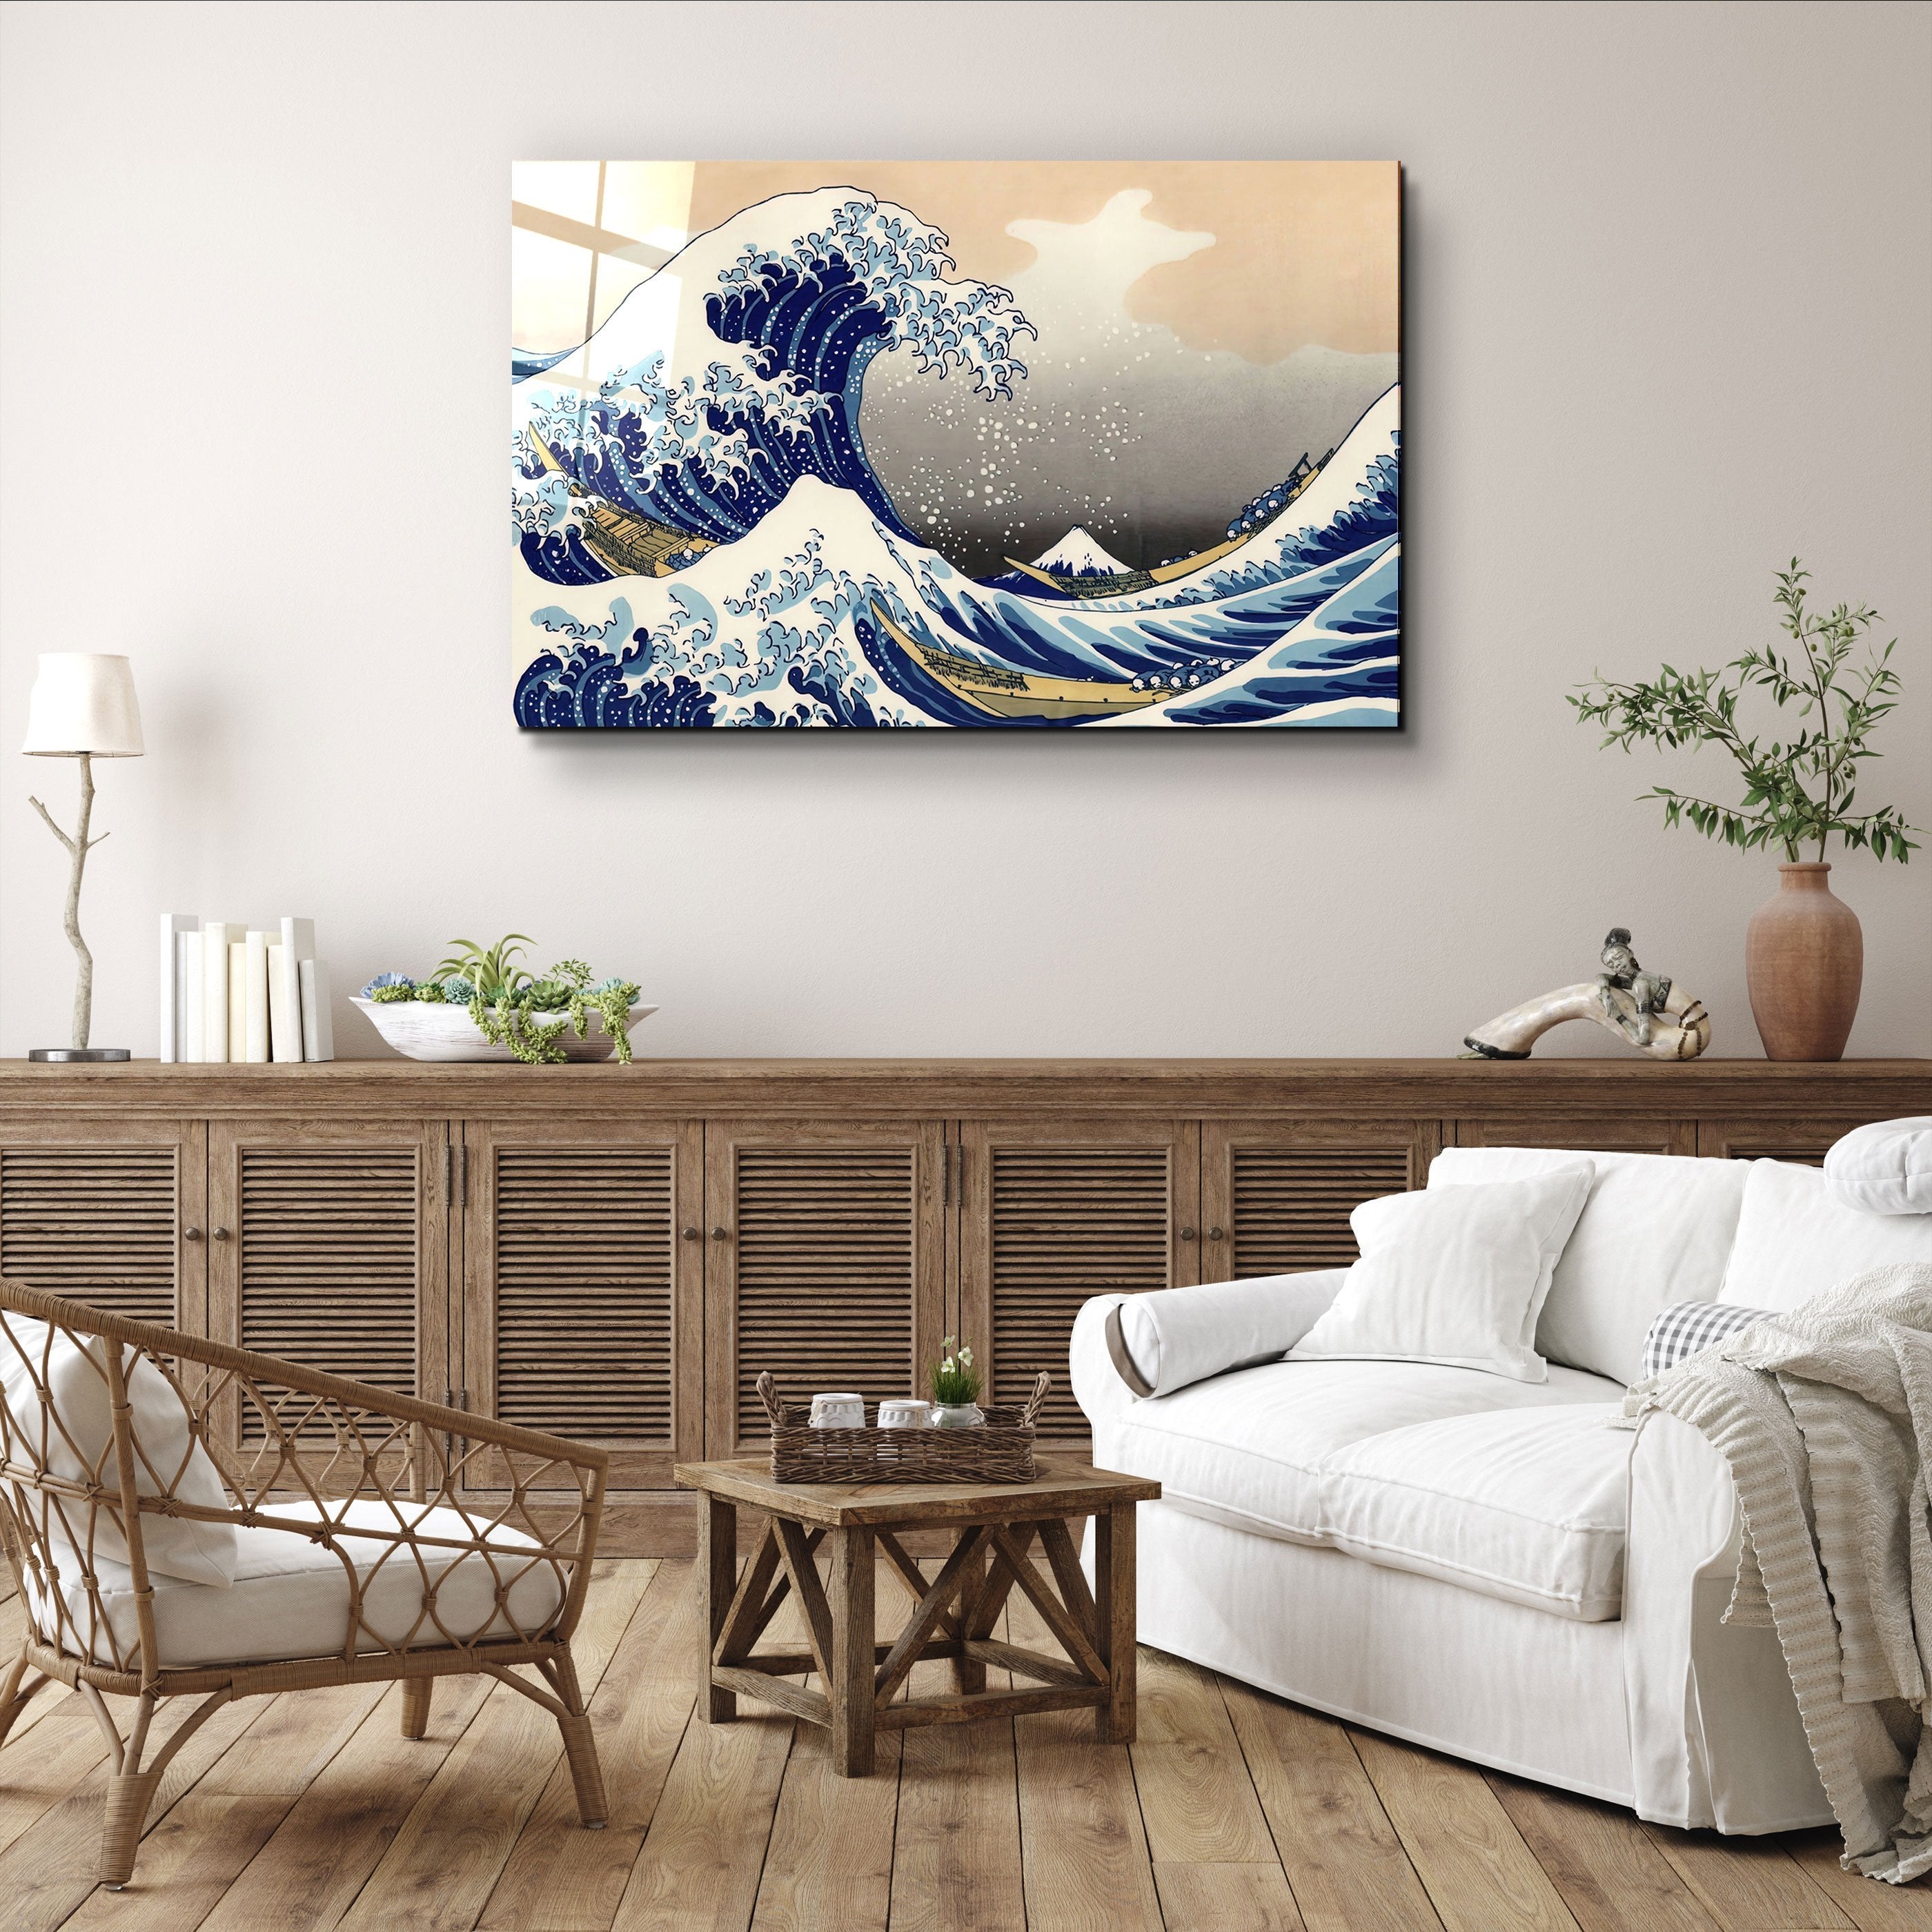 ・"The Great Wave off Kanagawa (1829) by Hokusai"・Glass Wall Art